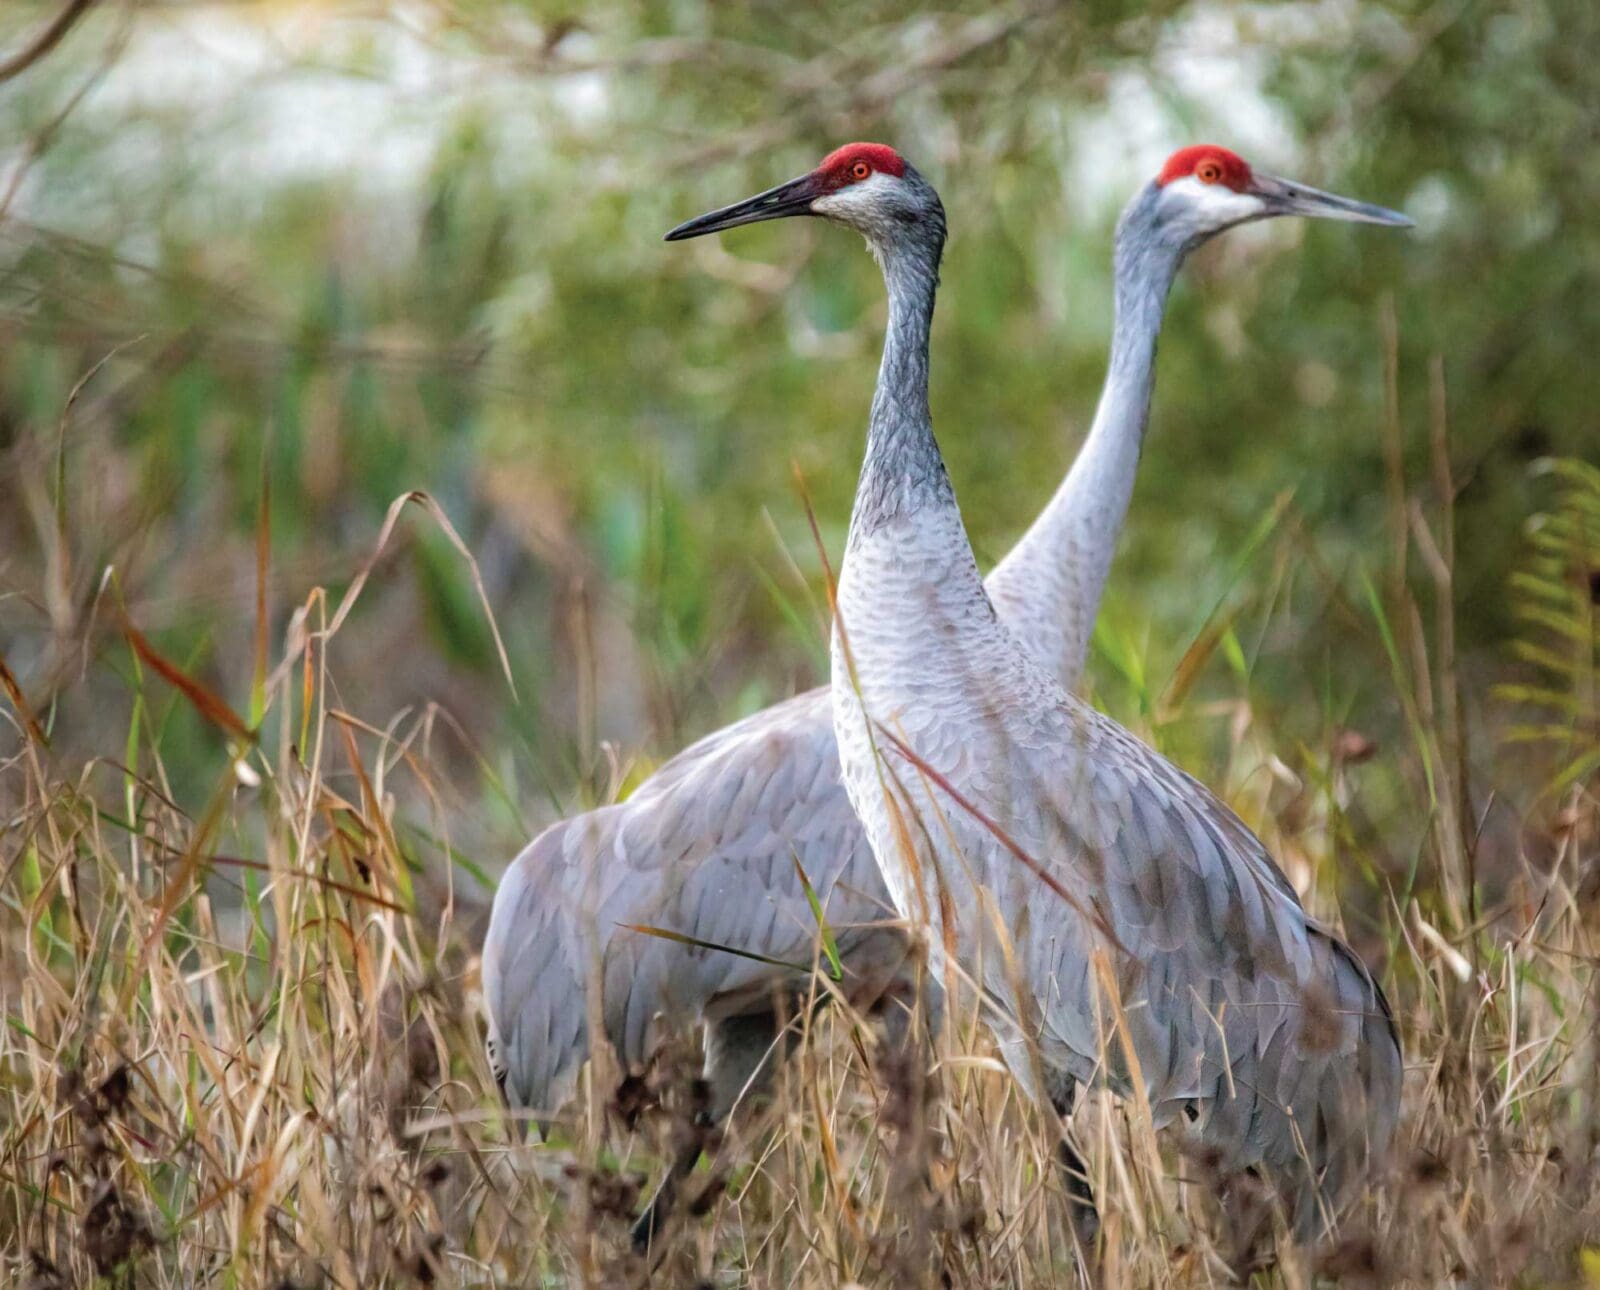 A pair of Sandhill cranes (Antigone canadensis) standing together